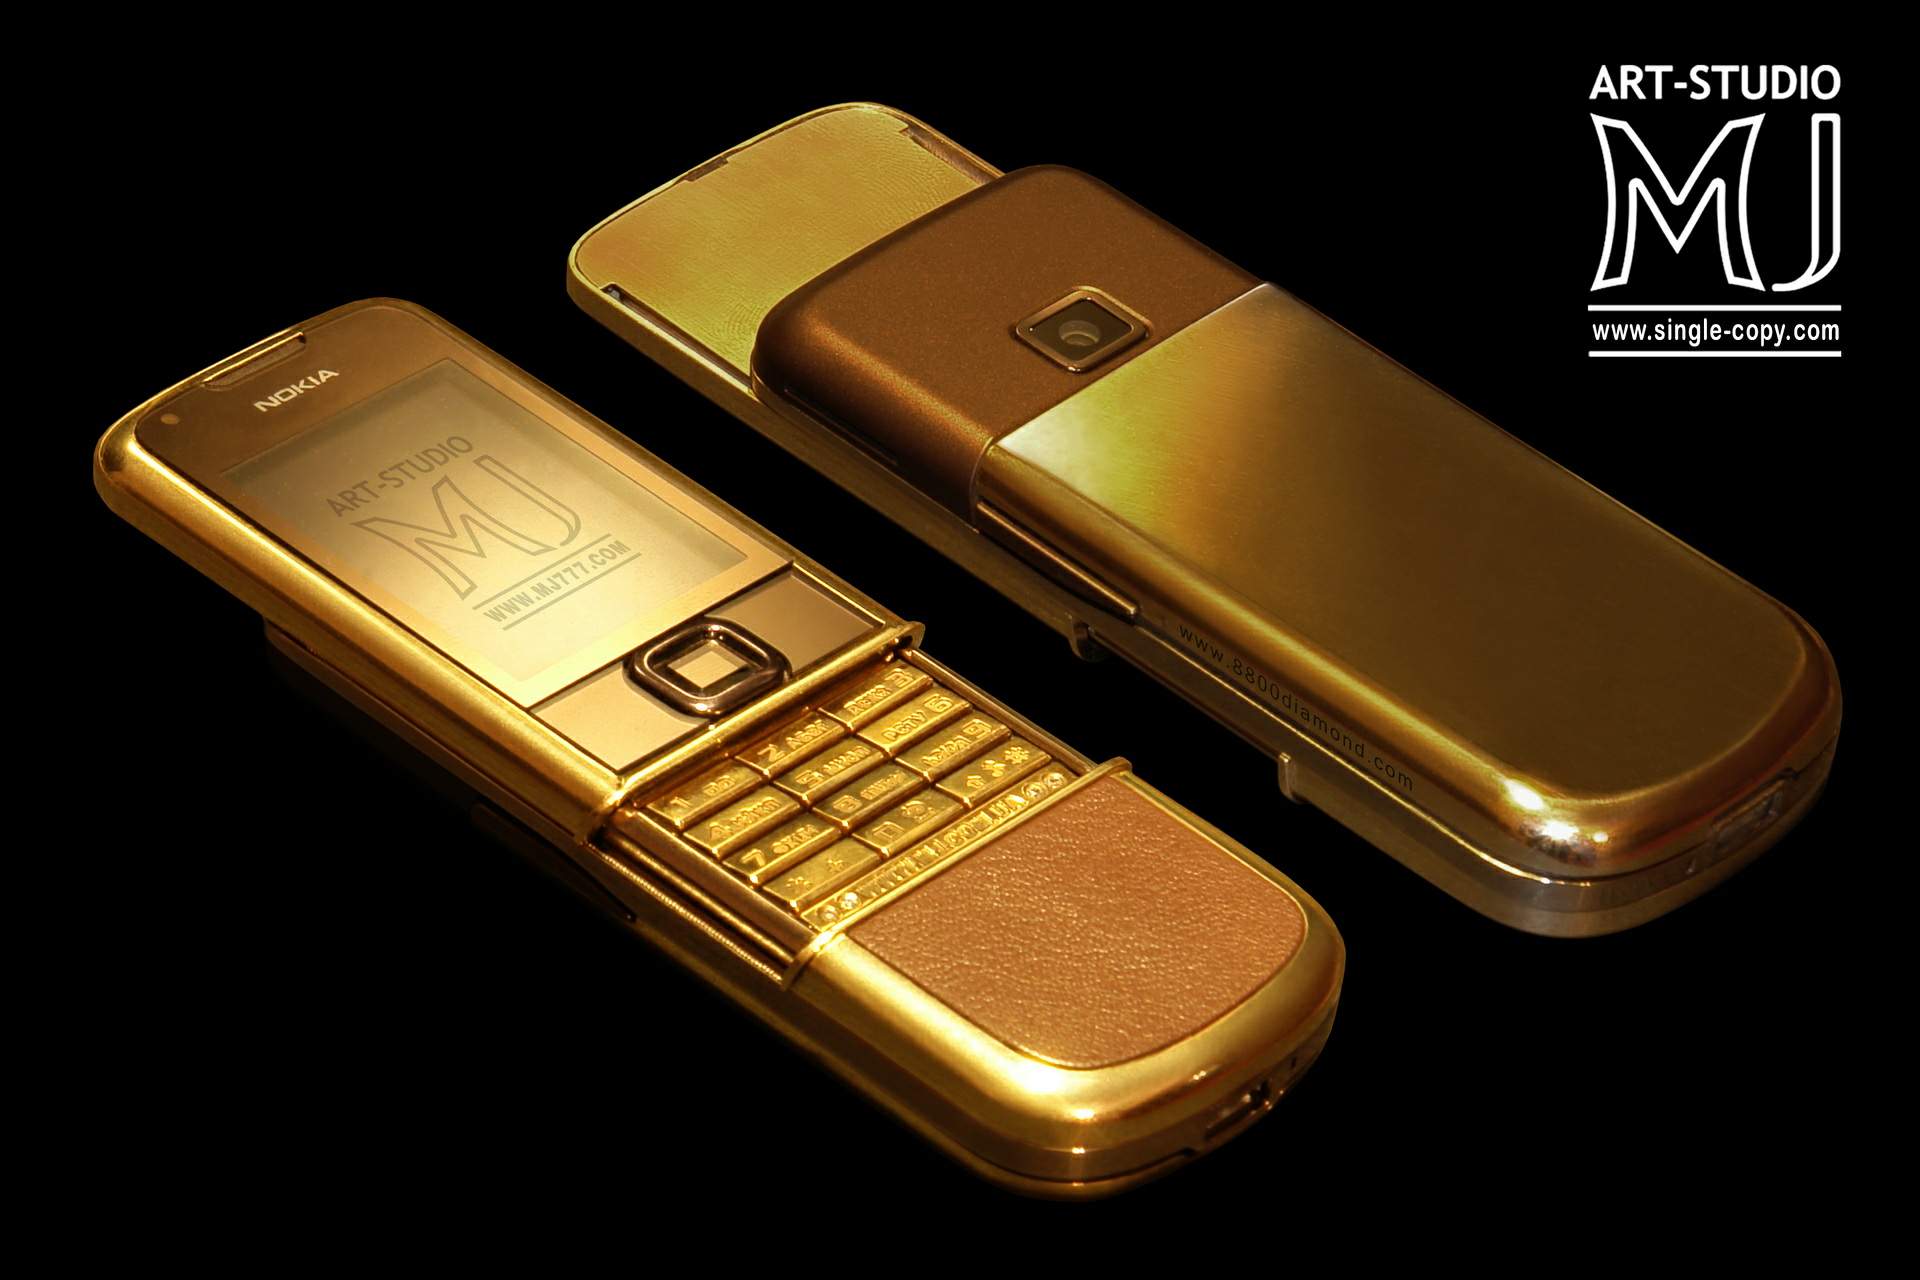 Nokia 8800 Arte Gold Luxury